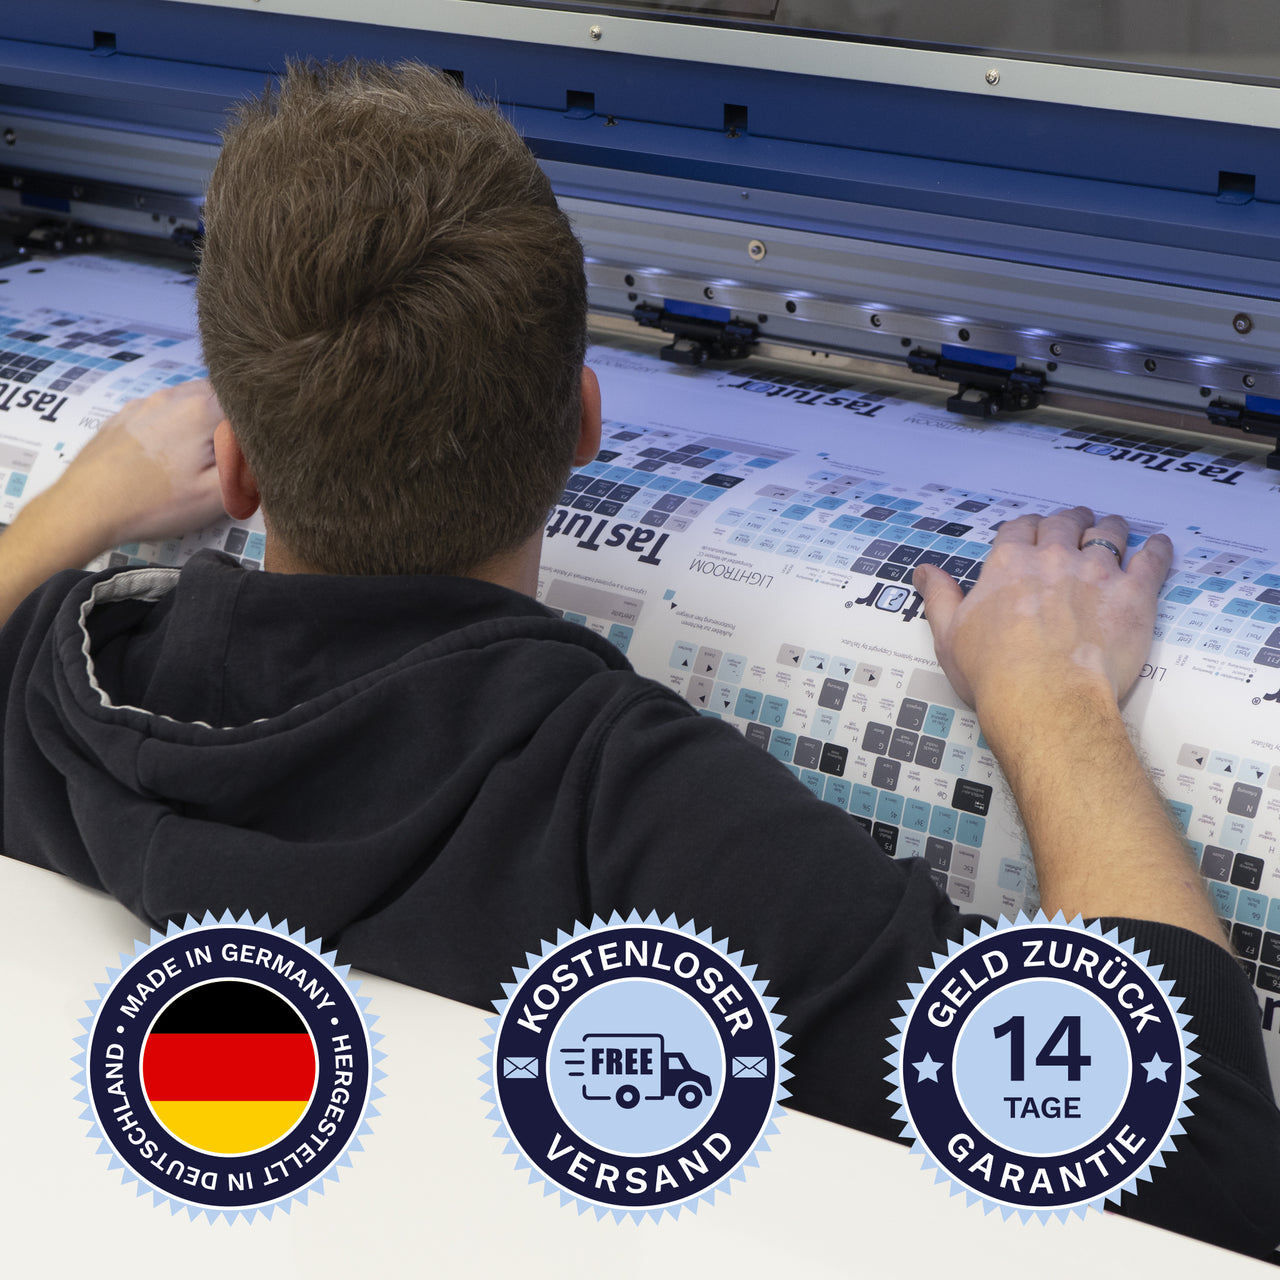 Reaper Tastaturaufkleber werden in Deutschland hergestellt. Der Versand ist kostenlos und wir gewährleisten 14 Tage Geld zurück Garantie.